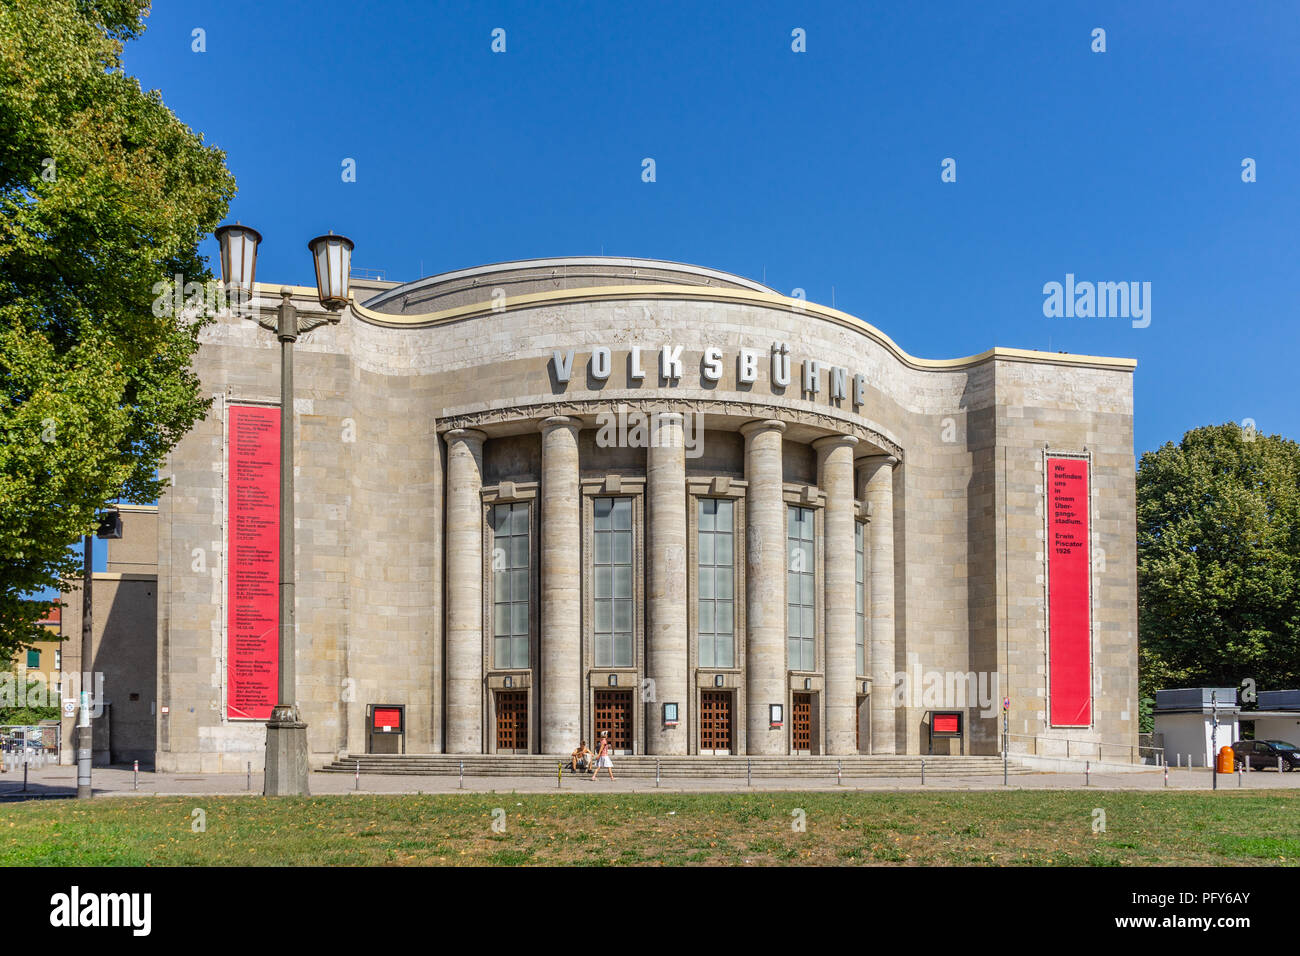 Il popolo del teatro (Volksbuehne) in Berlin Mitte district, un iconico teatro edificato 1913-1914 vicino a Rosa-Luxemburg Platz, Berlin, Germania Foto Stock